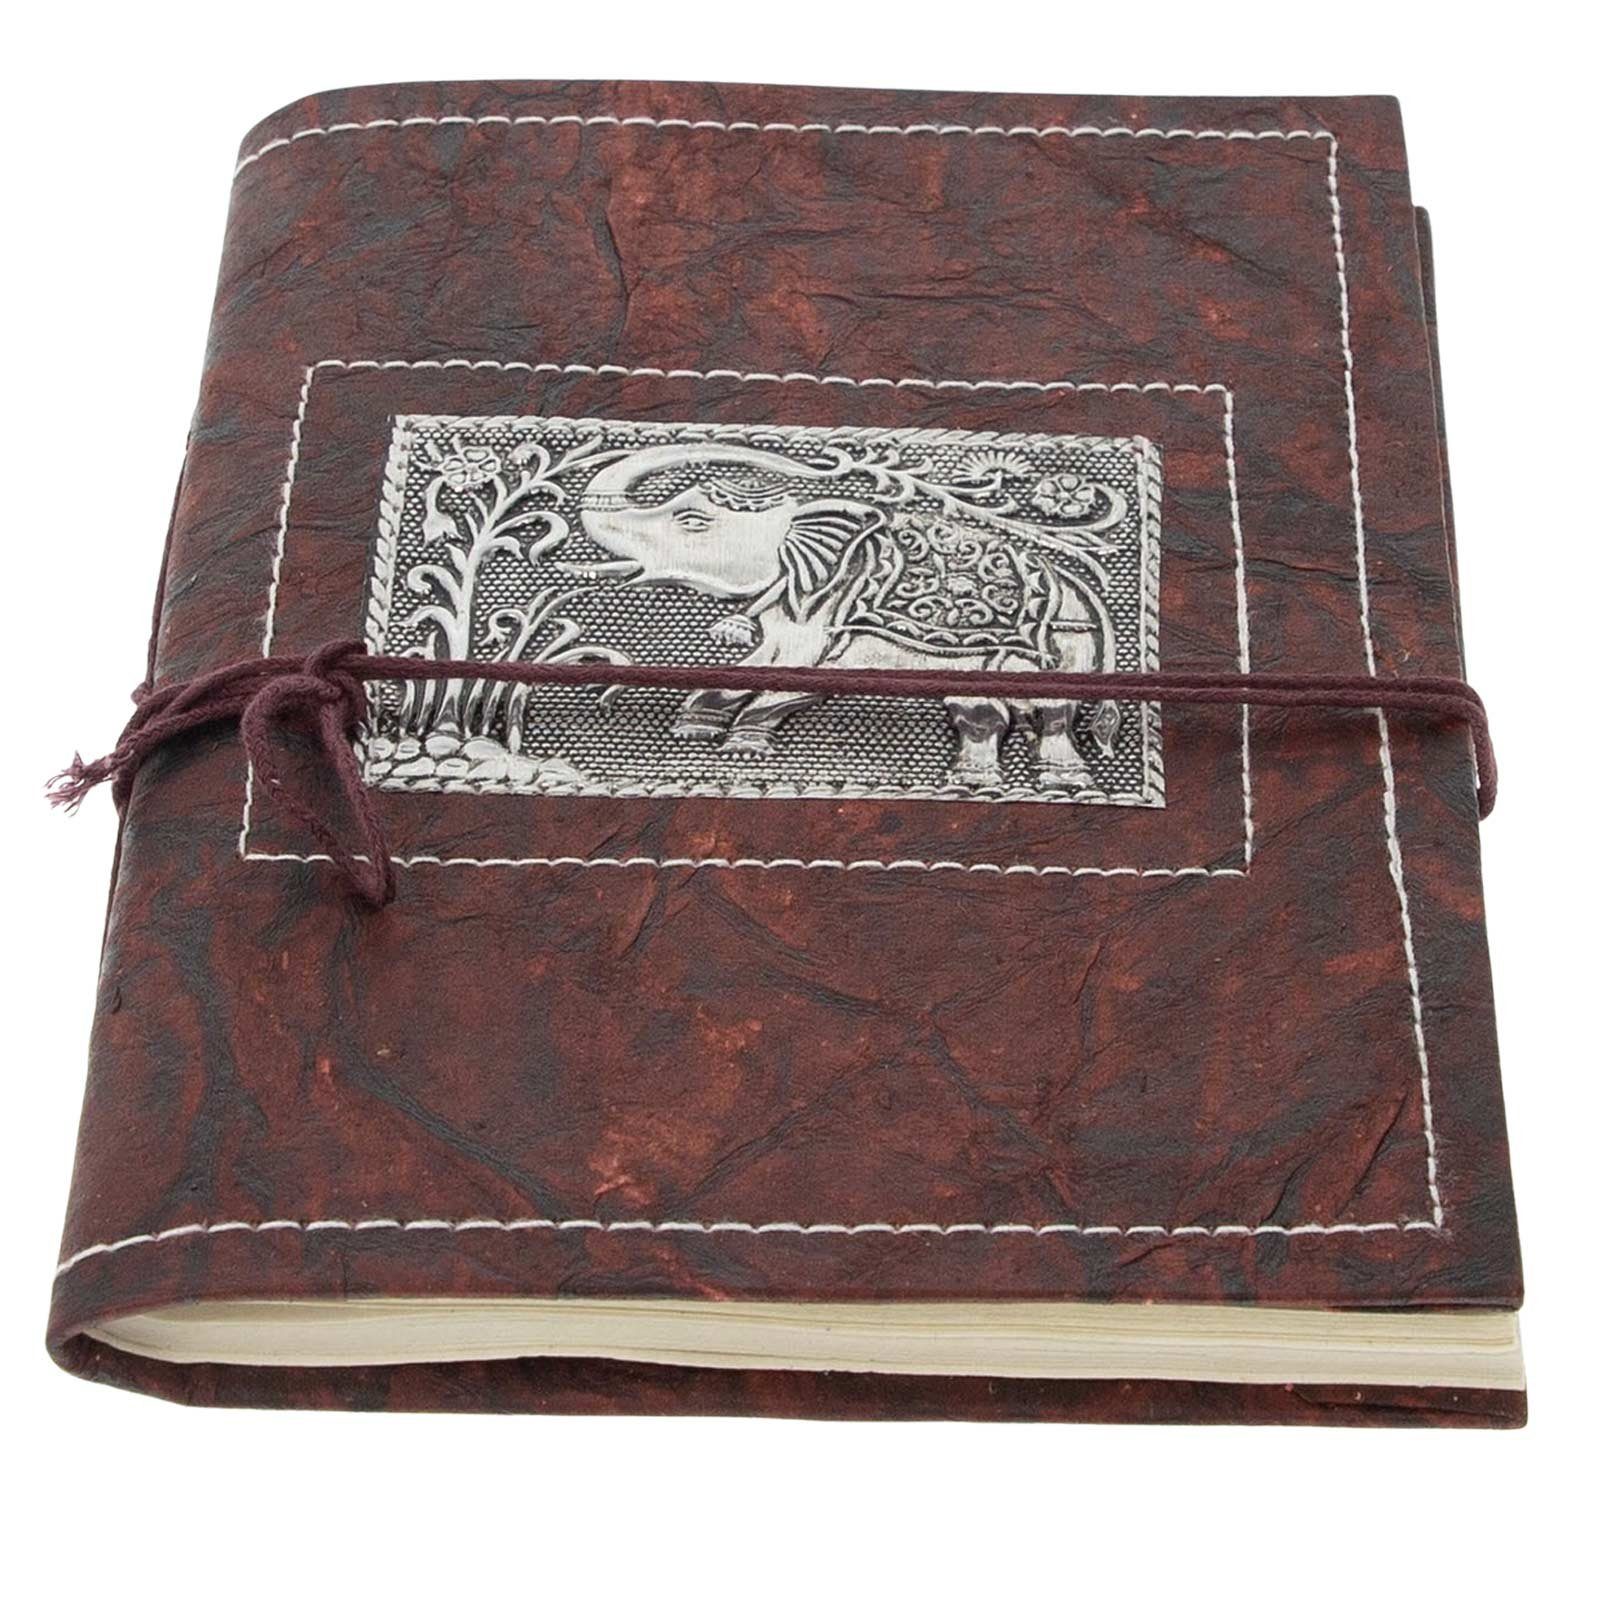 KUNST UND 20x15cm Tagebuch Elefant Notizbuch Poesiealbum Tagebuch handgefertigt-Geprägtes MAGIE